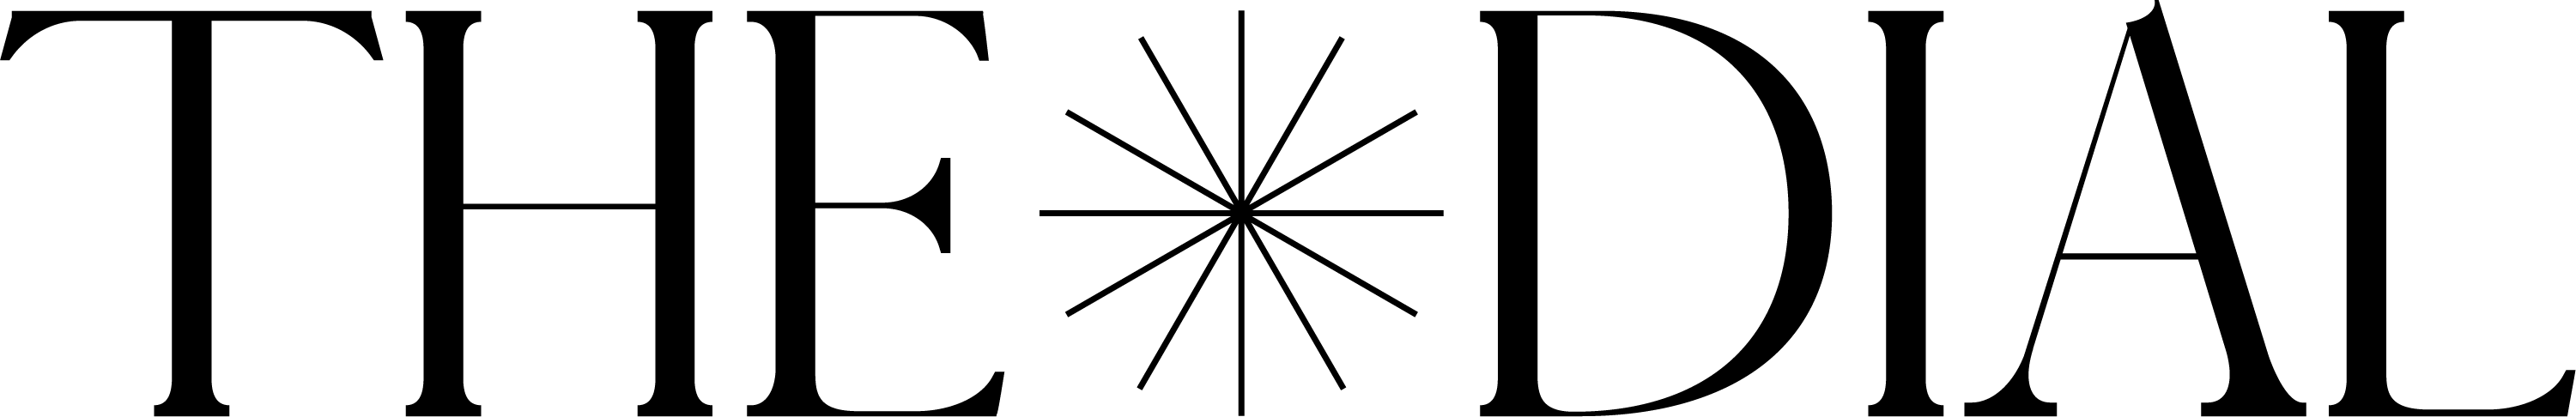 The Dial logo